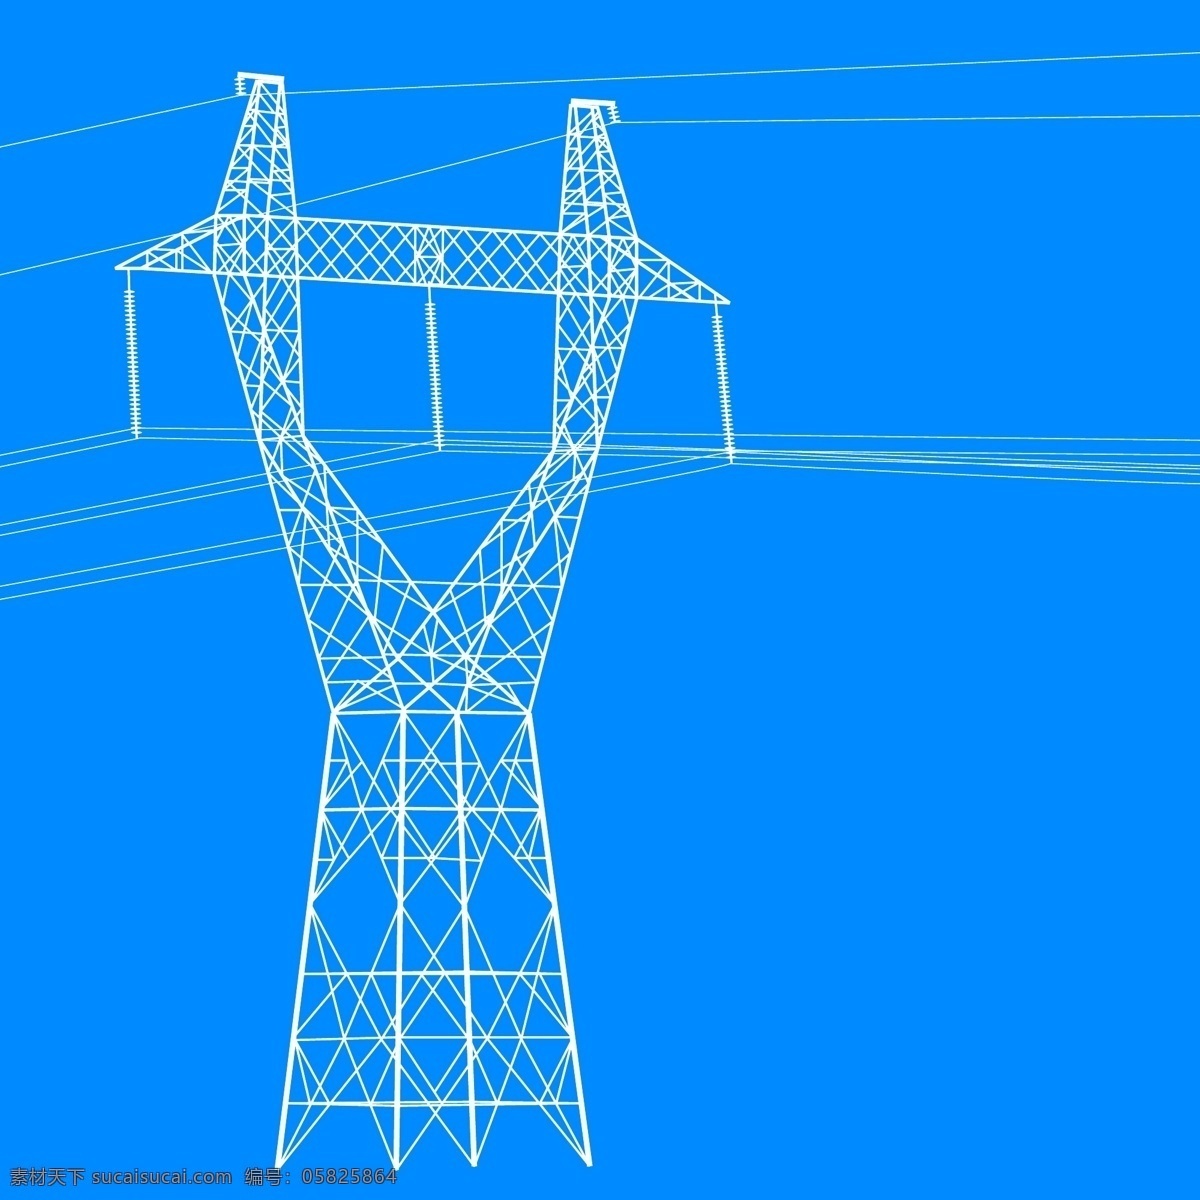 高压线 输电 塔 输电塔 高压输电塔 电力输送 电线杆 生活百科 矢量素材 蓝色